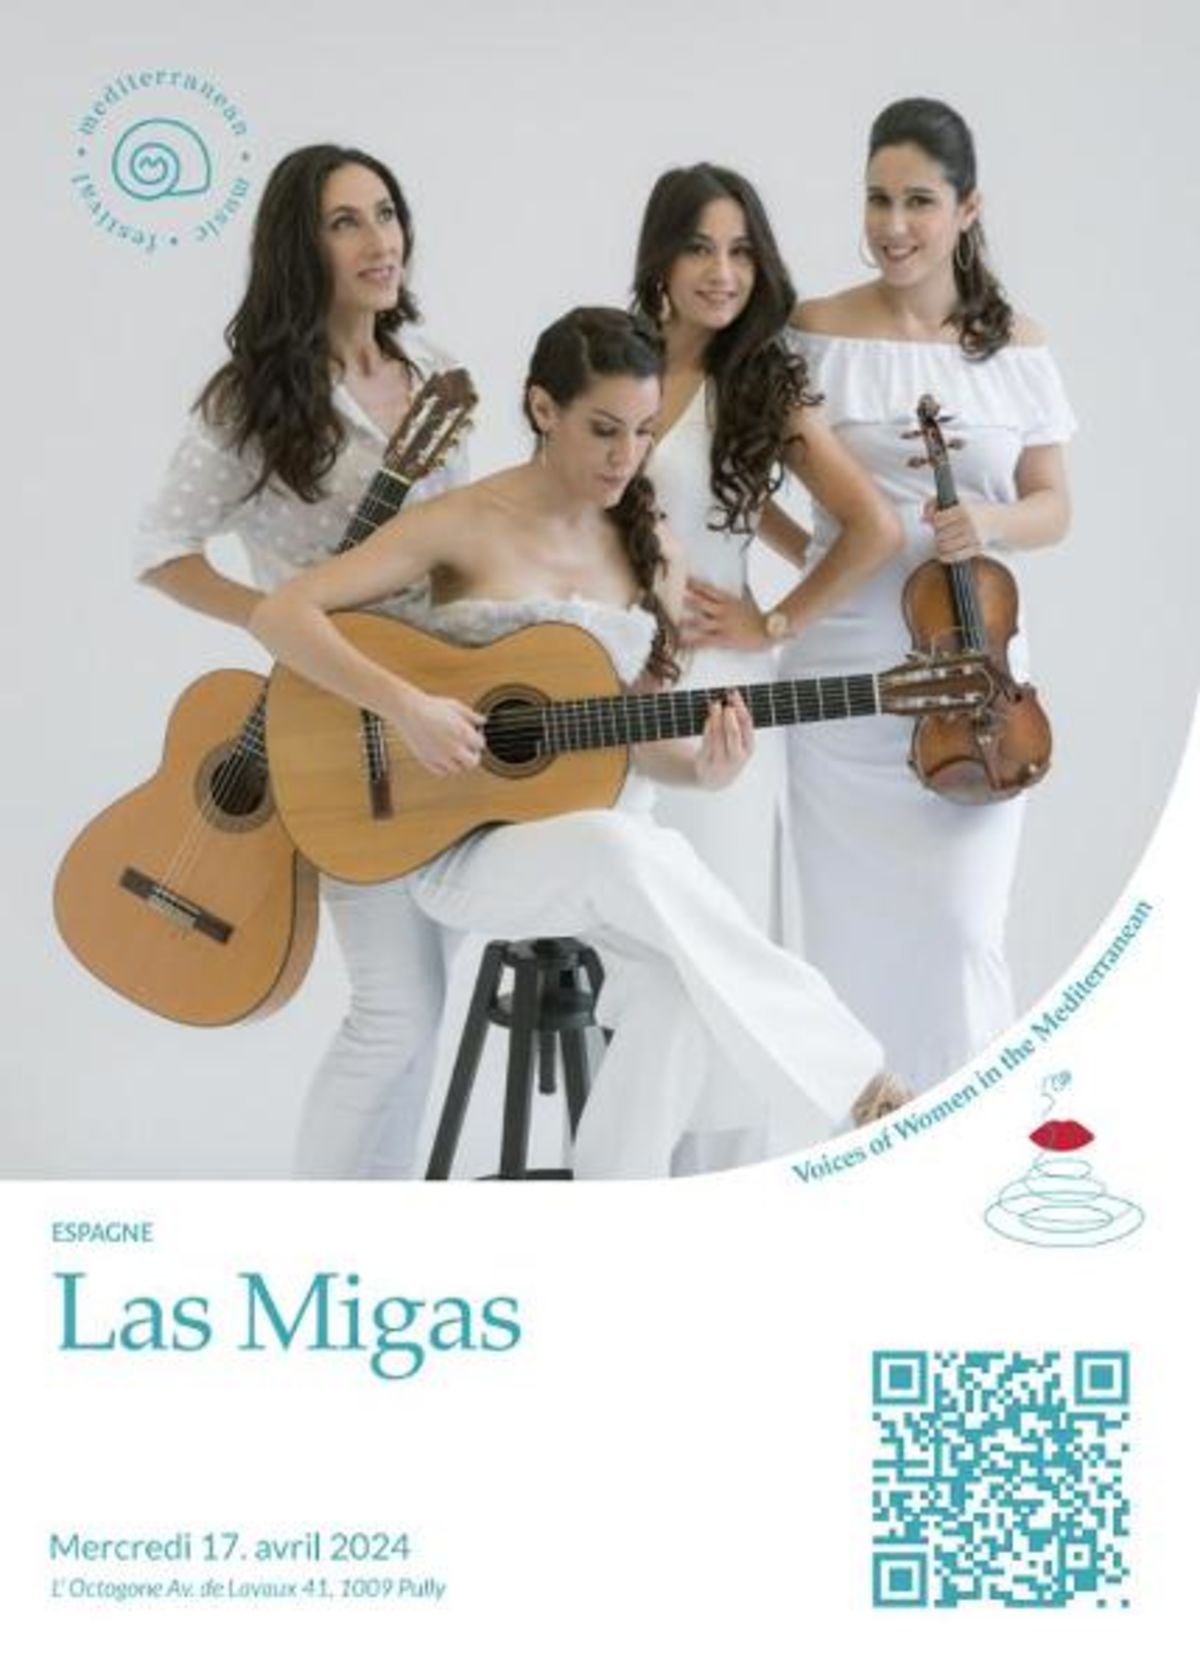 Concert des "Las Migas d’Espagne", un des groupes les plus connus dEspagne su...